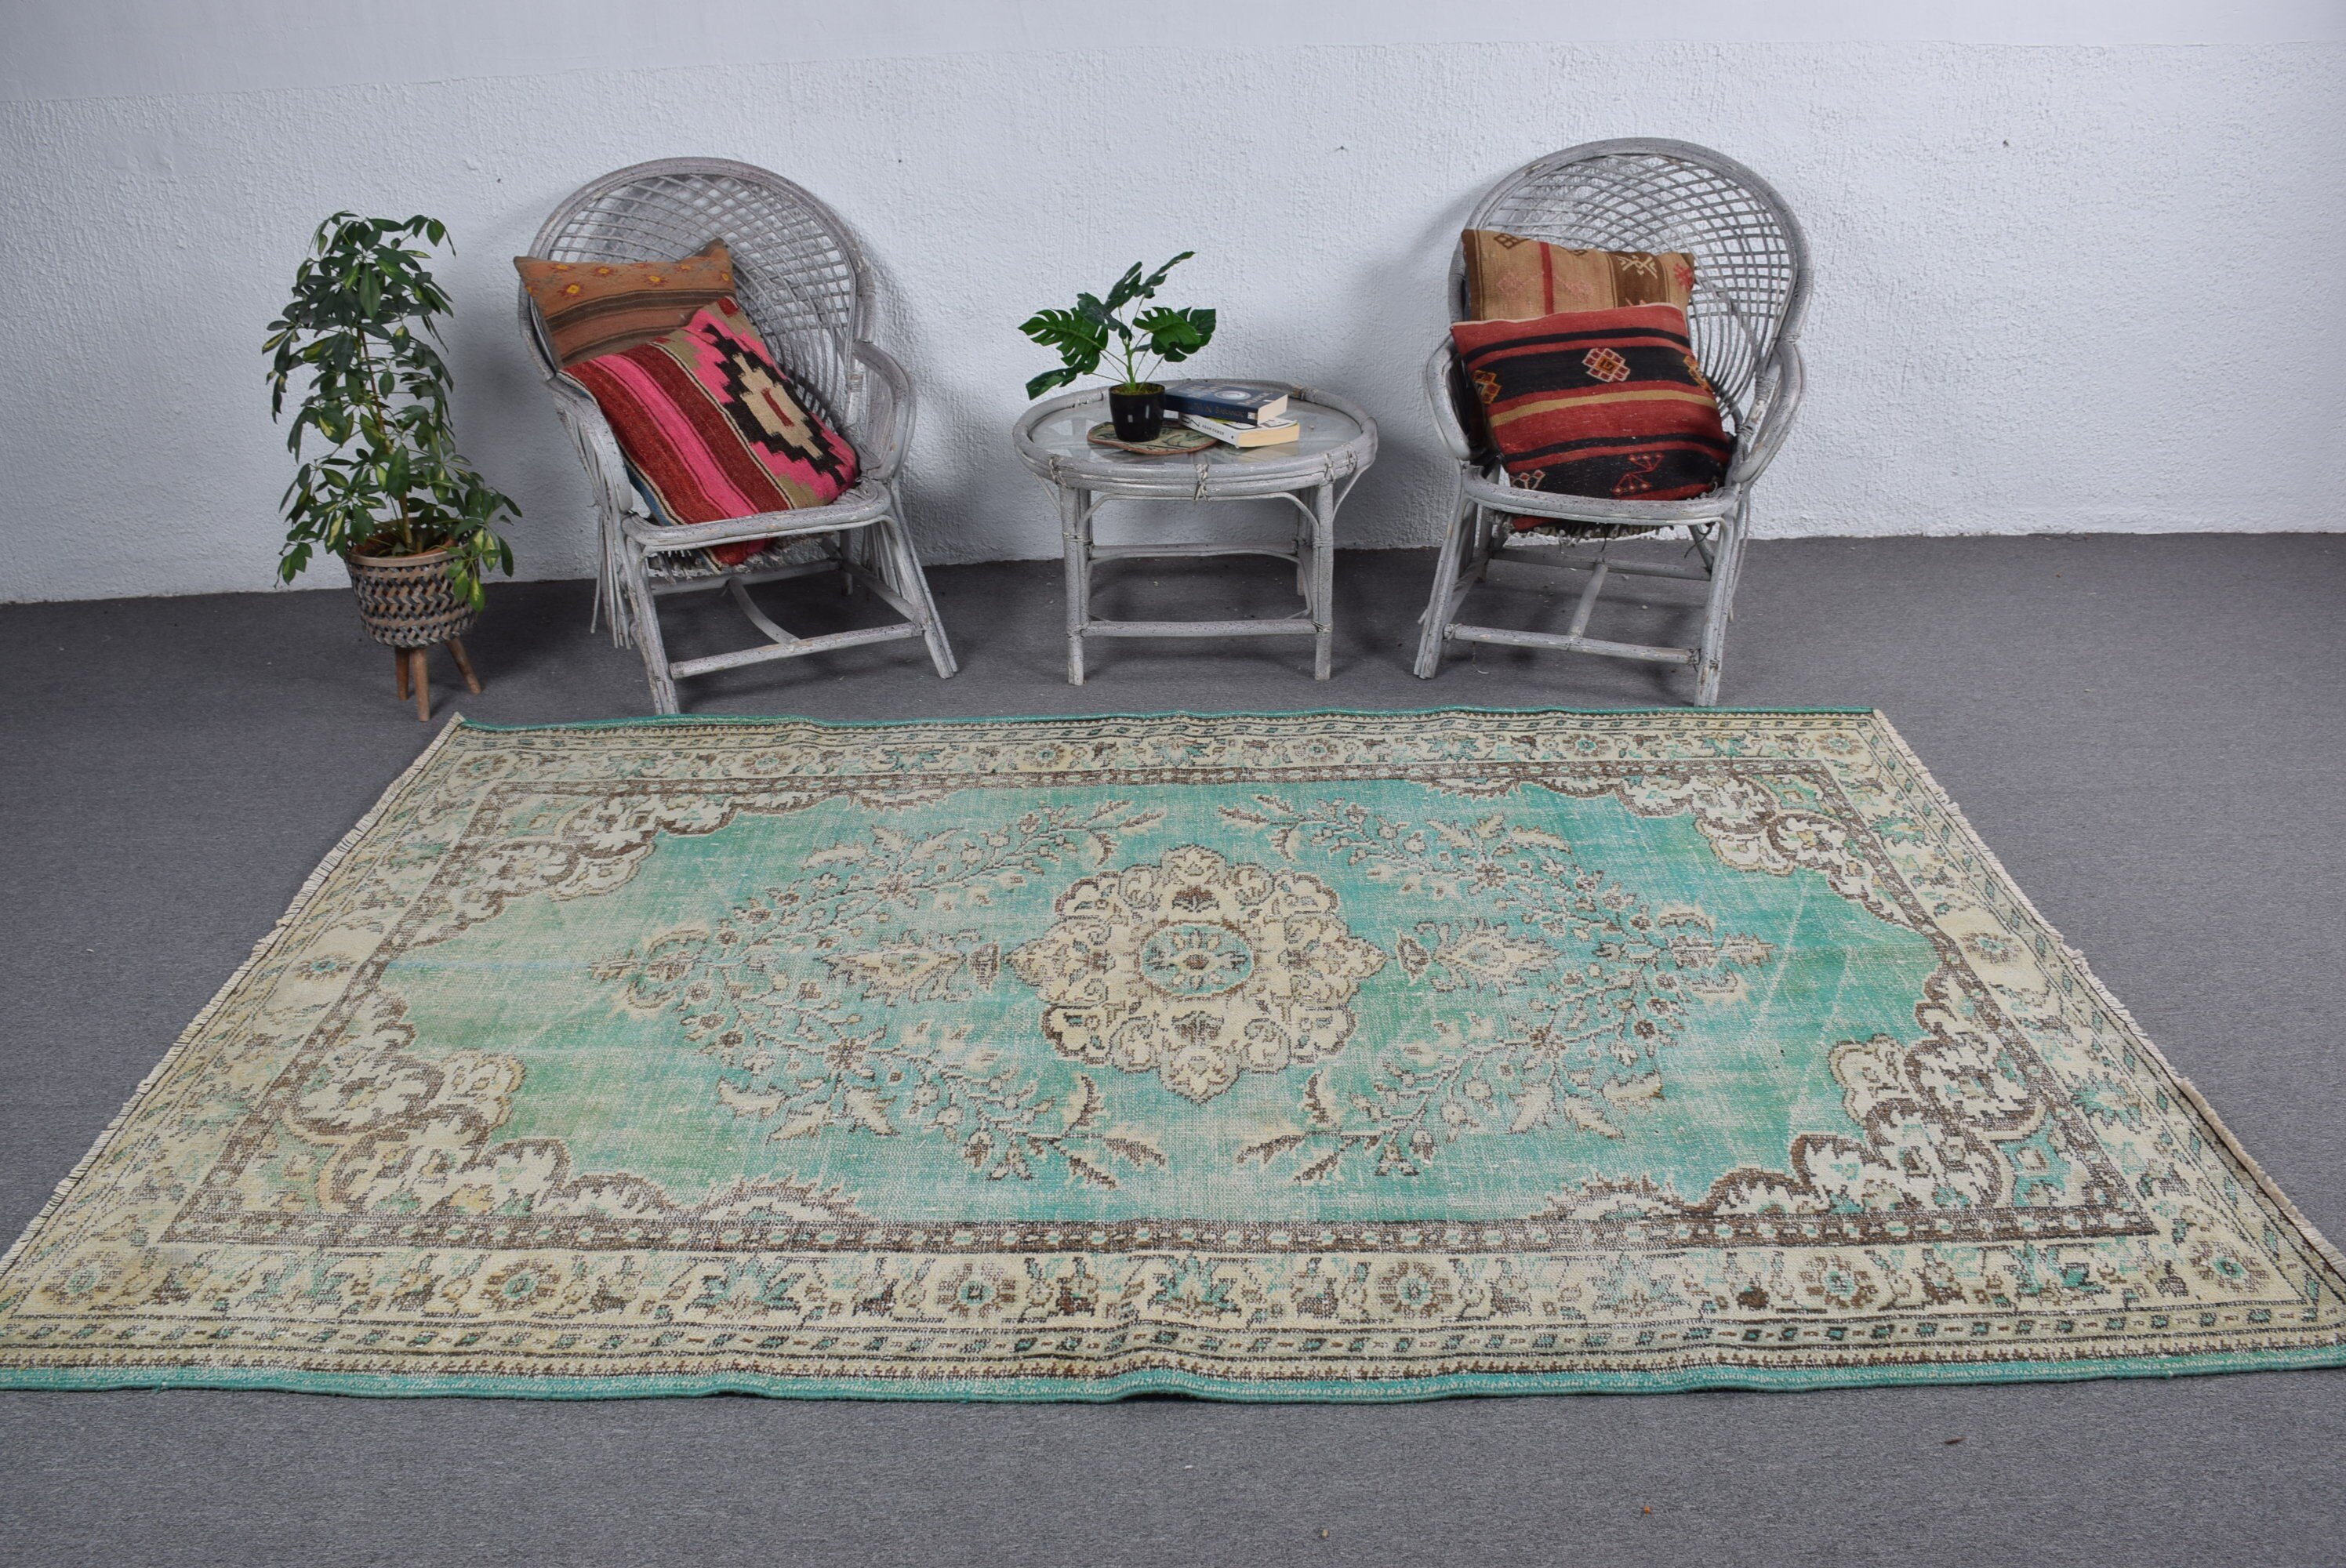 5.6x8.7 ft Large Rug, Green Floor Rug, Moroccan Rugs, Vintage Rug, Turkish Rug, Living Room Rugs, Old Rugs, Dining Room Rugs